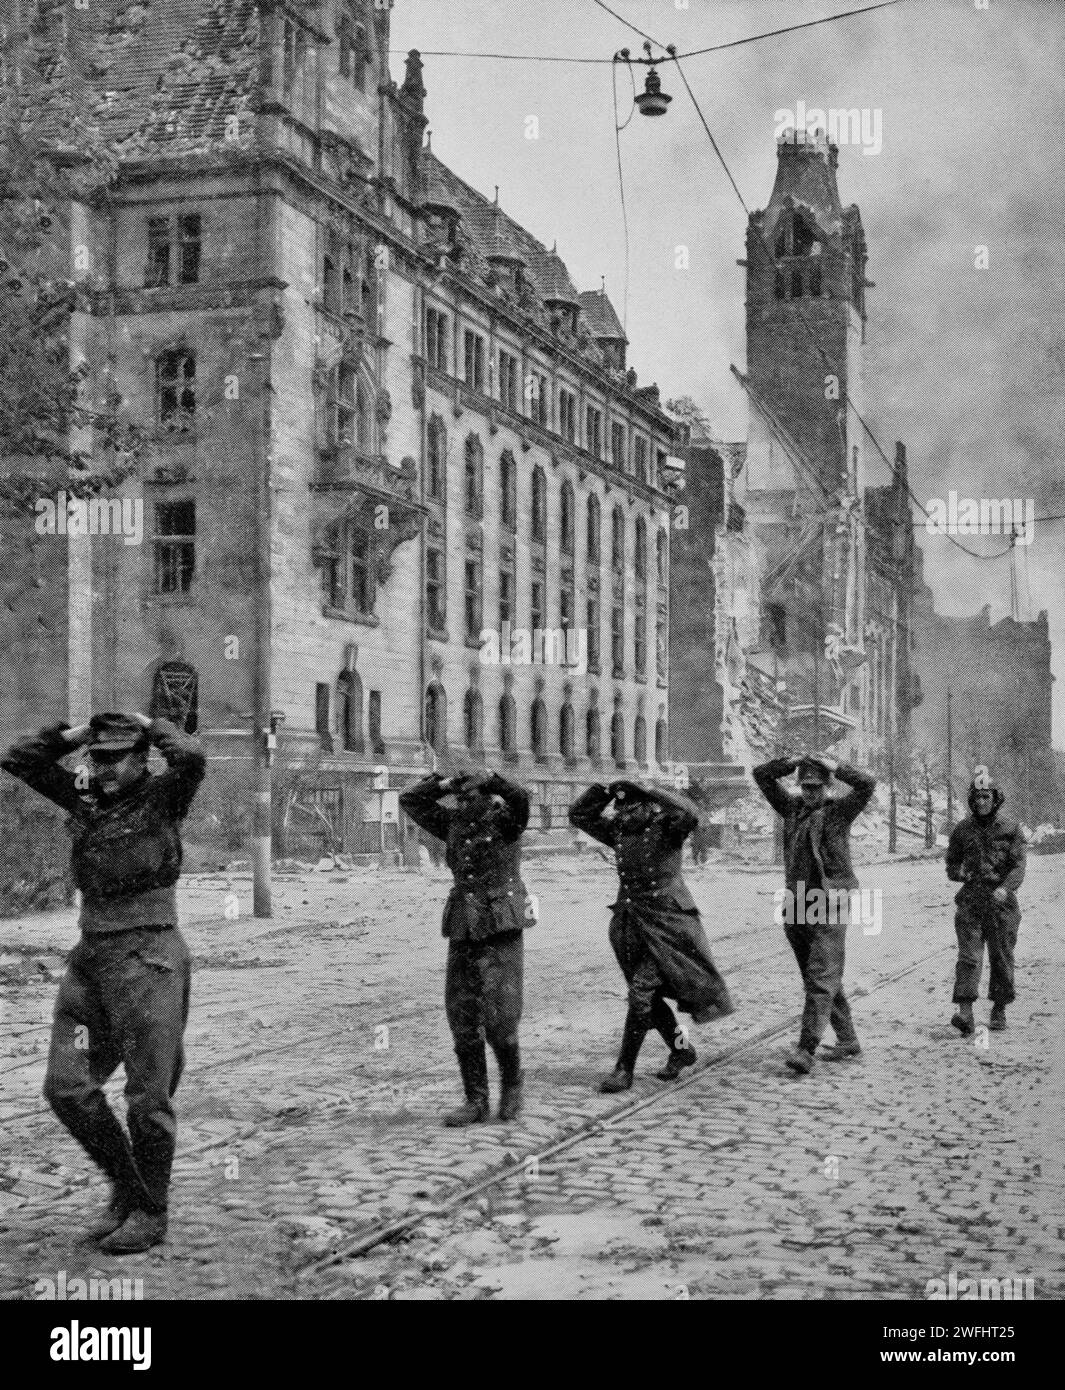 Les prisonniers allemands étant menés à la suite de l'occupation de la ville allemande de Hanovre par la 9e armée américaine le 10 avril 1945, pendant les derniers jours de la Seconde Guerre mondiale. Banque D'Images